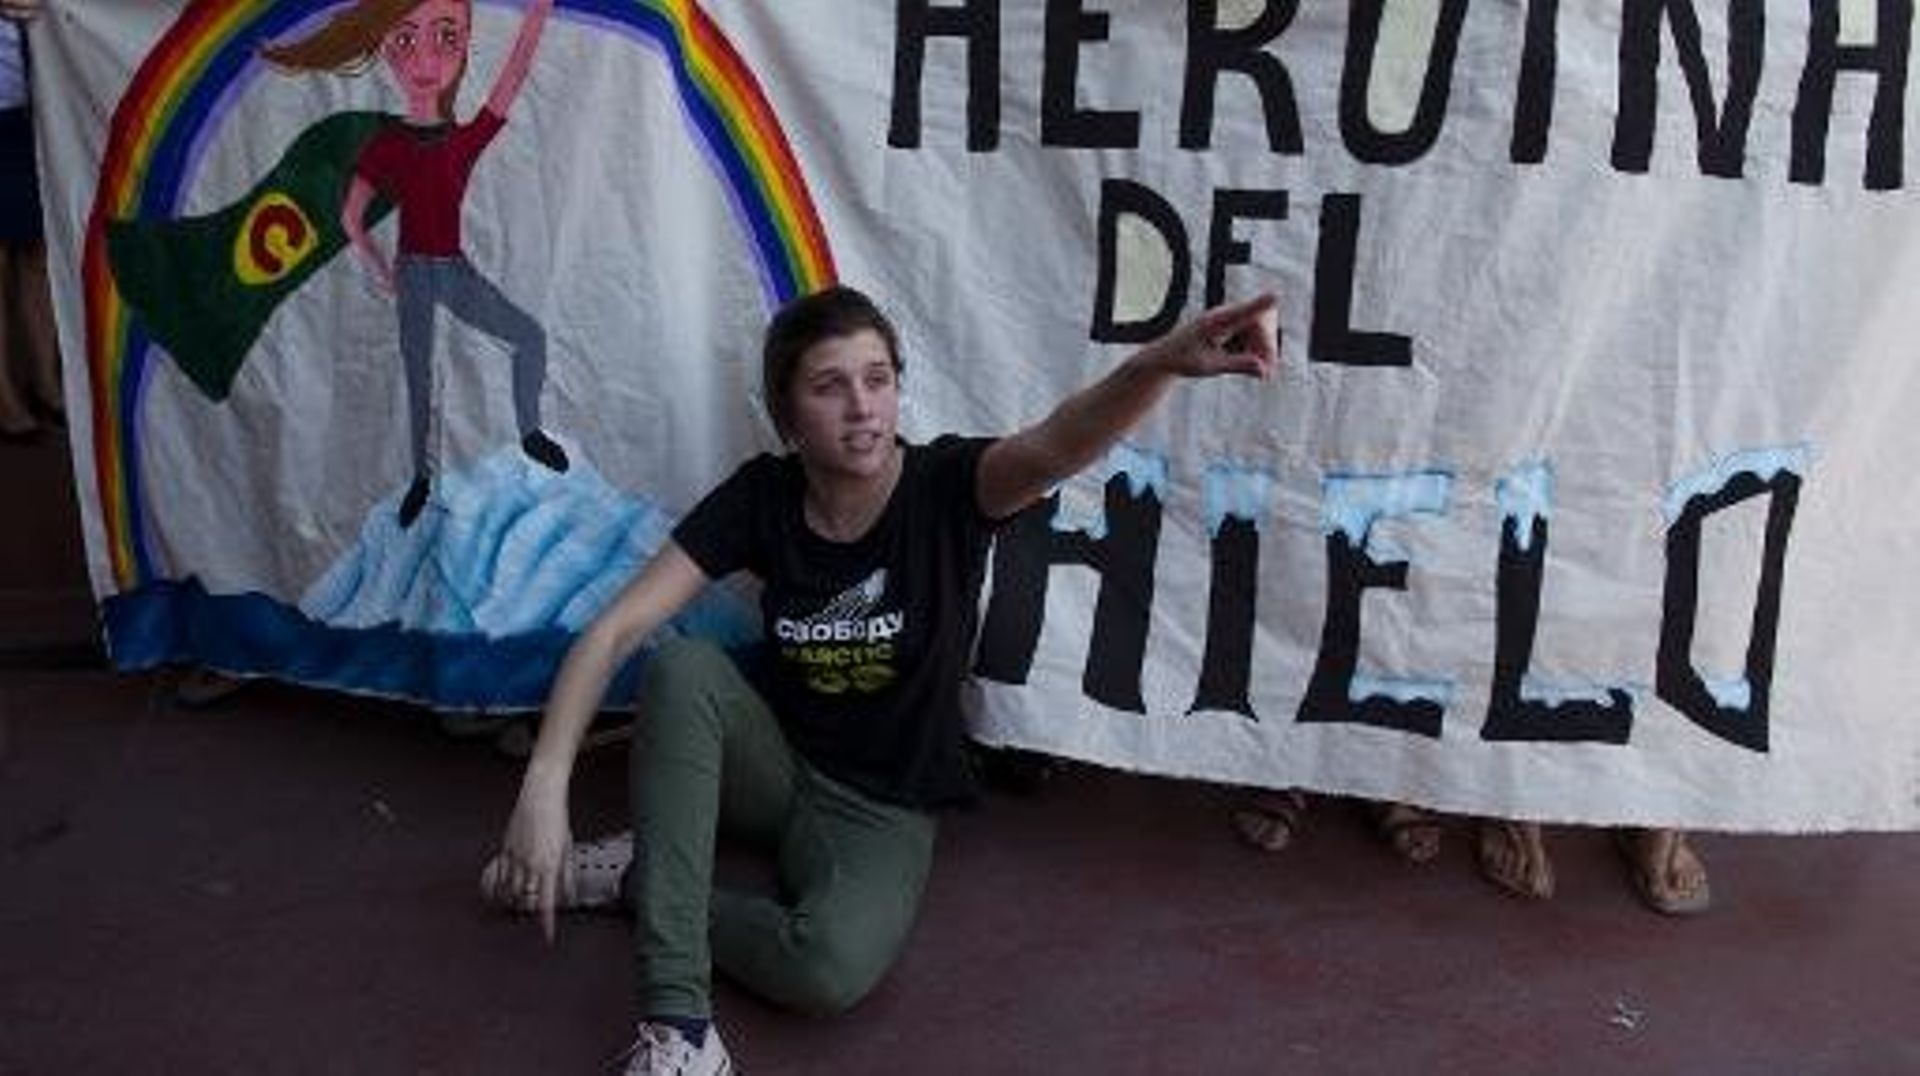 La militante argentine de Greenpeace Camila Speziale devant une banderole la célébrant comme une "héroïne de la glace", le 28 décembre à l'aéroport de Buenos Aires